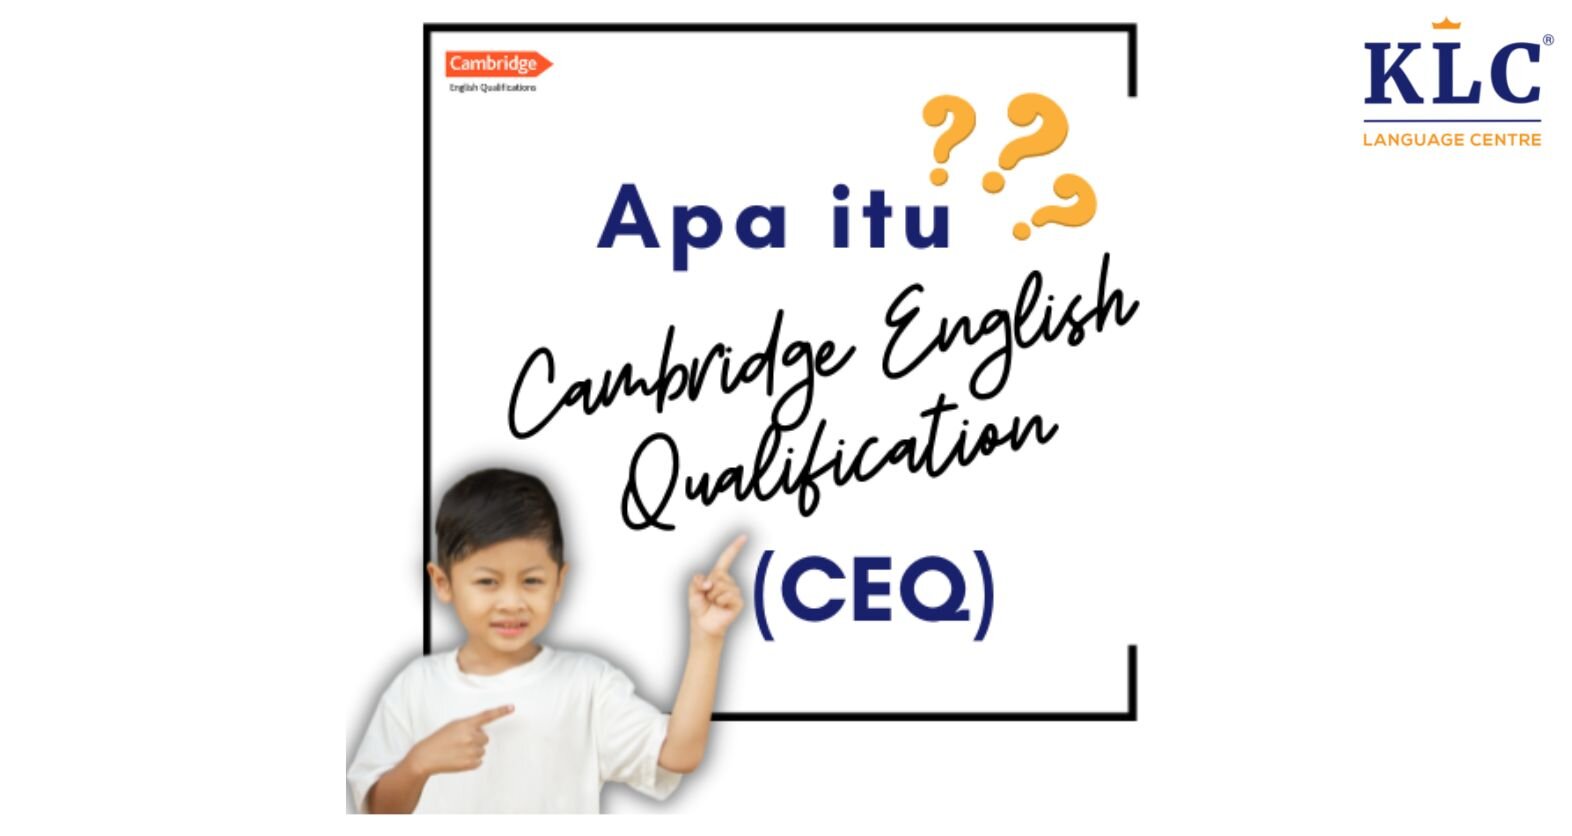 Apa itu Cambridge English Qualifications (CEQ)?